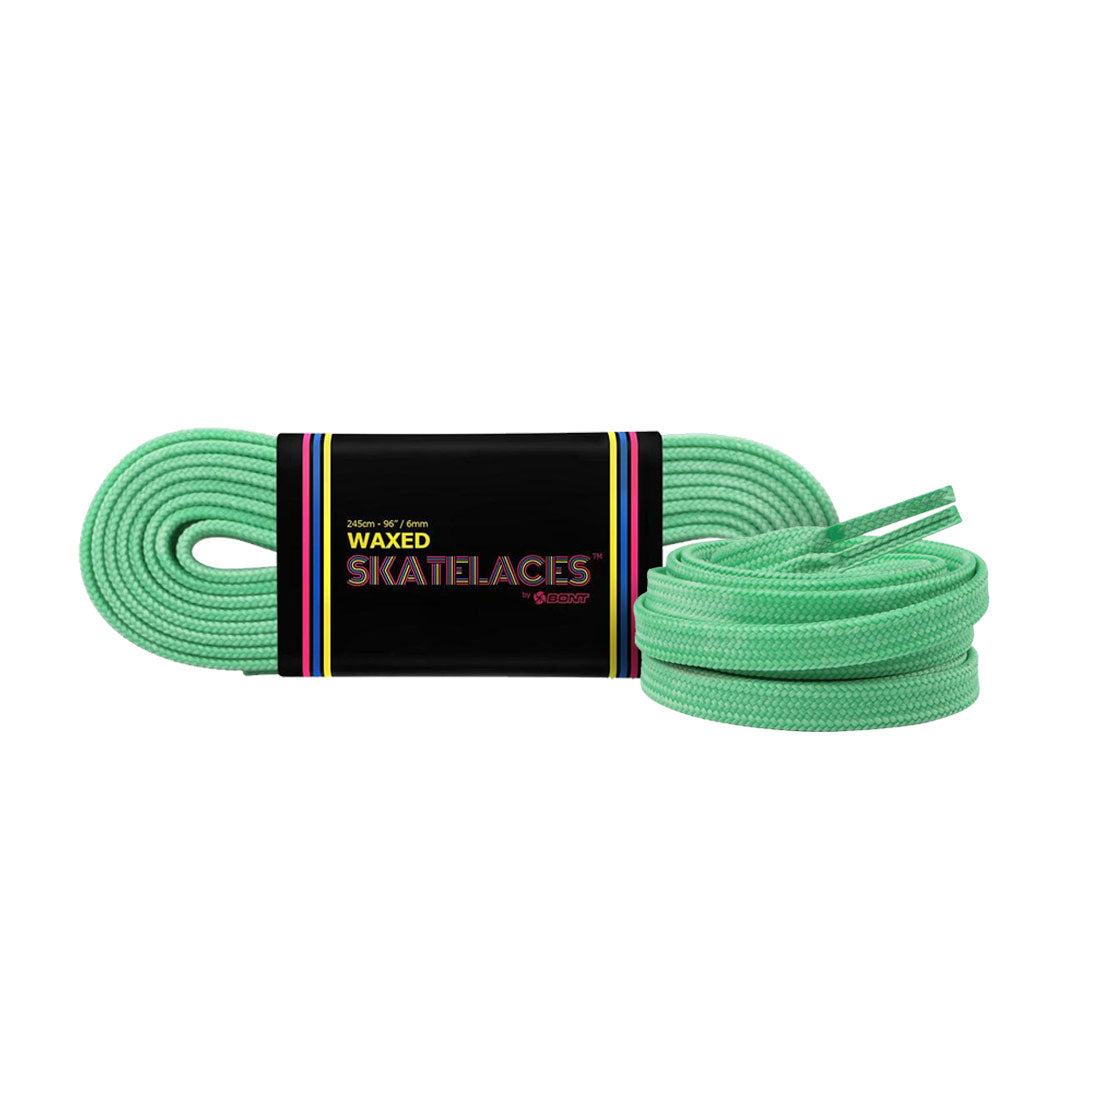 Bont Waxed 8mm Laces - 150cm/59in Pistachio Green Laces